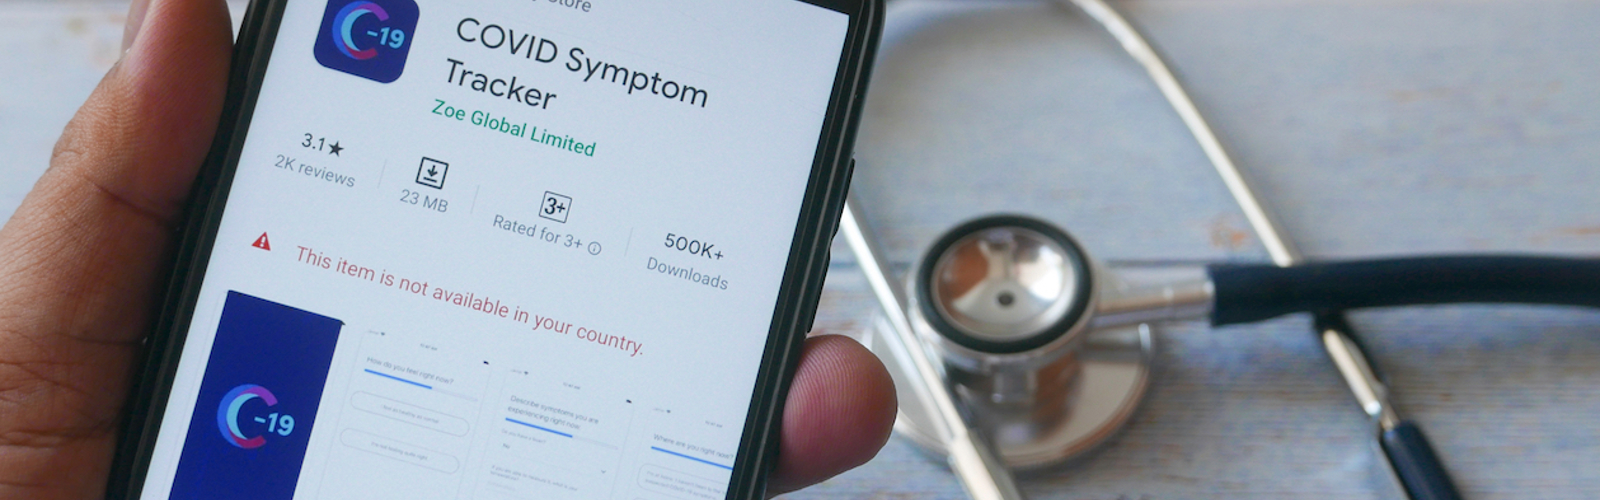 Symptom tracker app to expand its reach